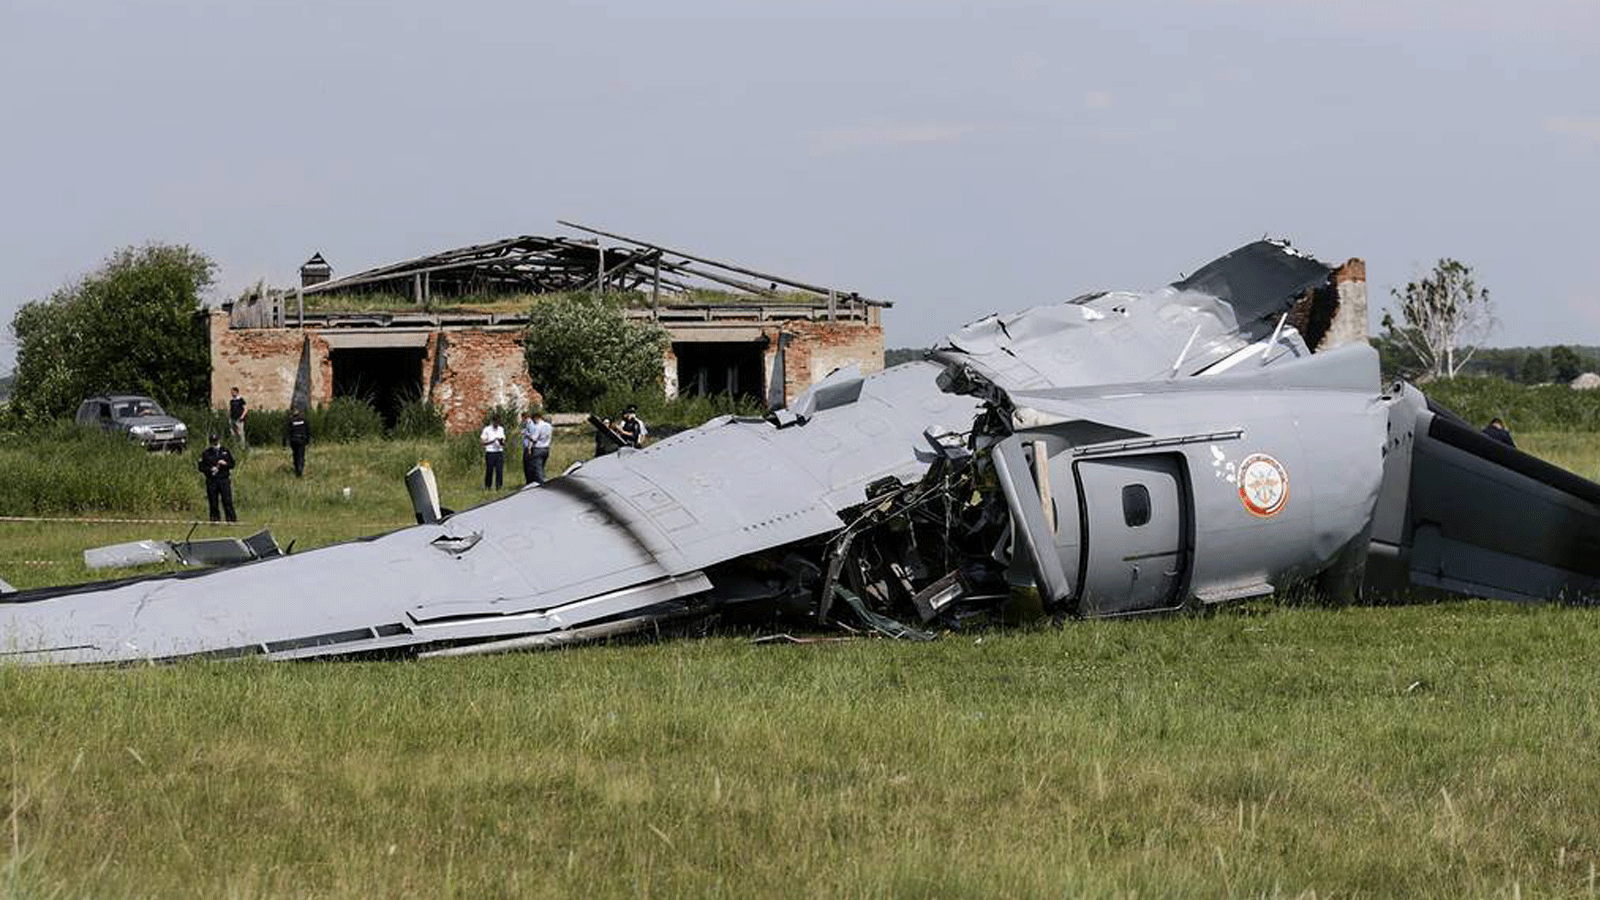 صورة لطائرة روسية تحطمت في الغابة بتاريخ 19 حزيران\ يونيو 2021